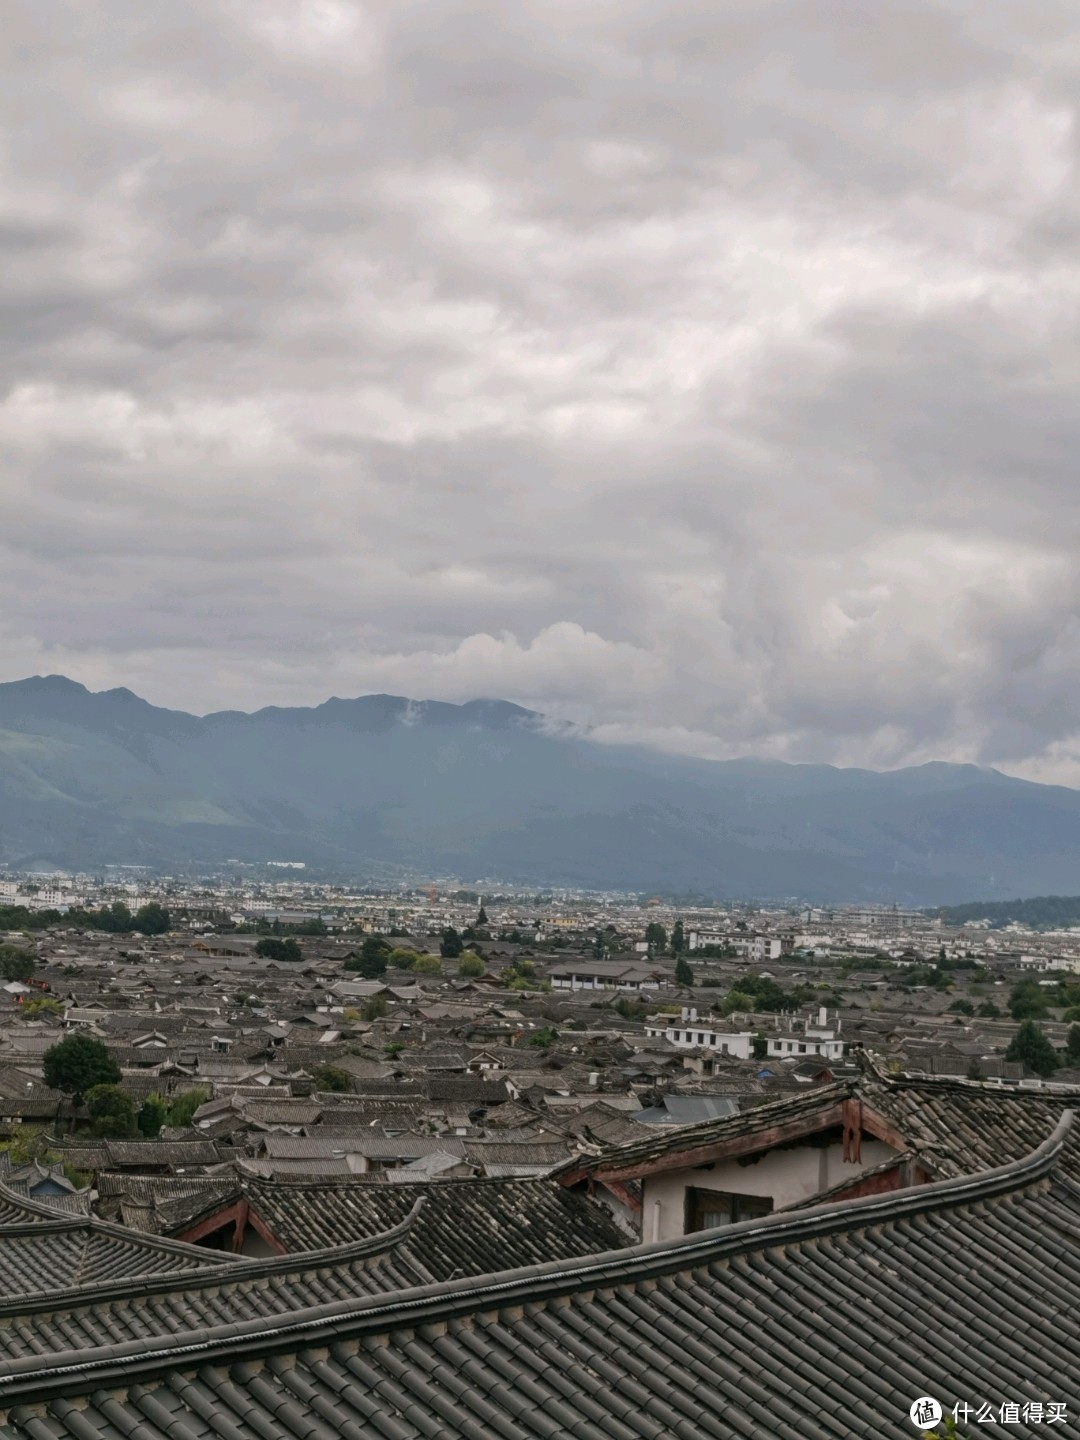 丽江丨登高远眺一览丽江古城全貌，犄角旮旯观景咖啡店安排上